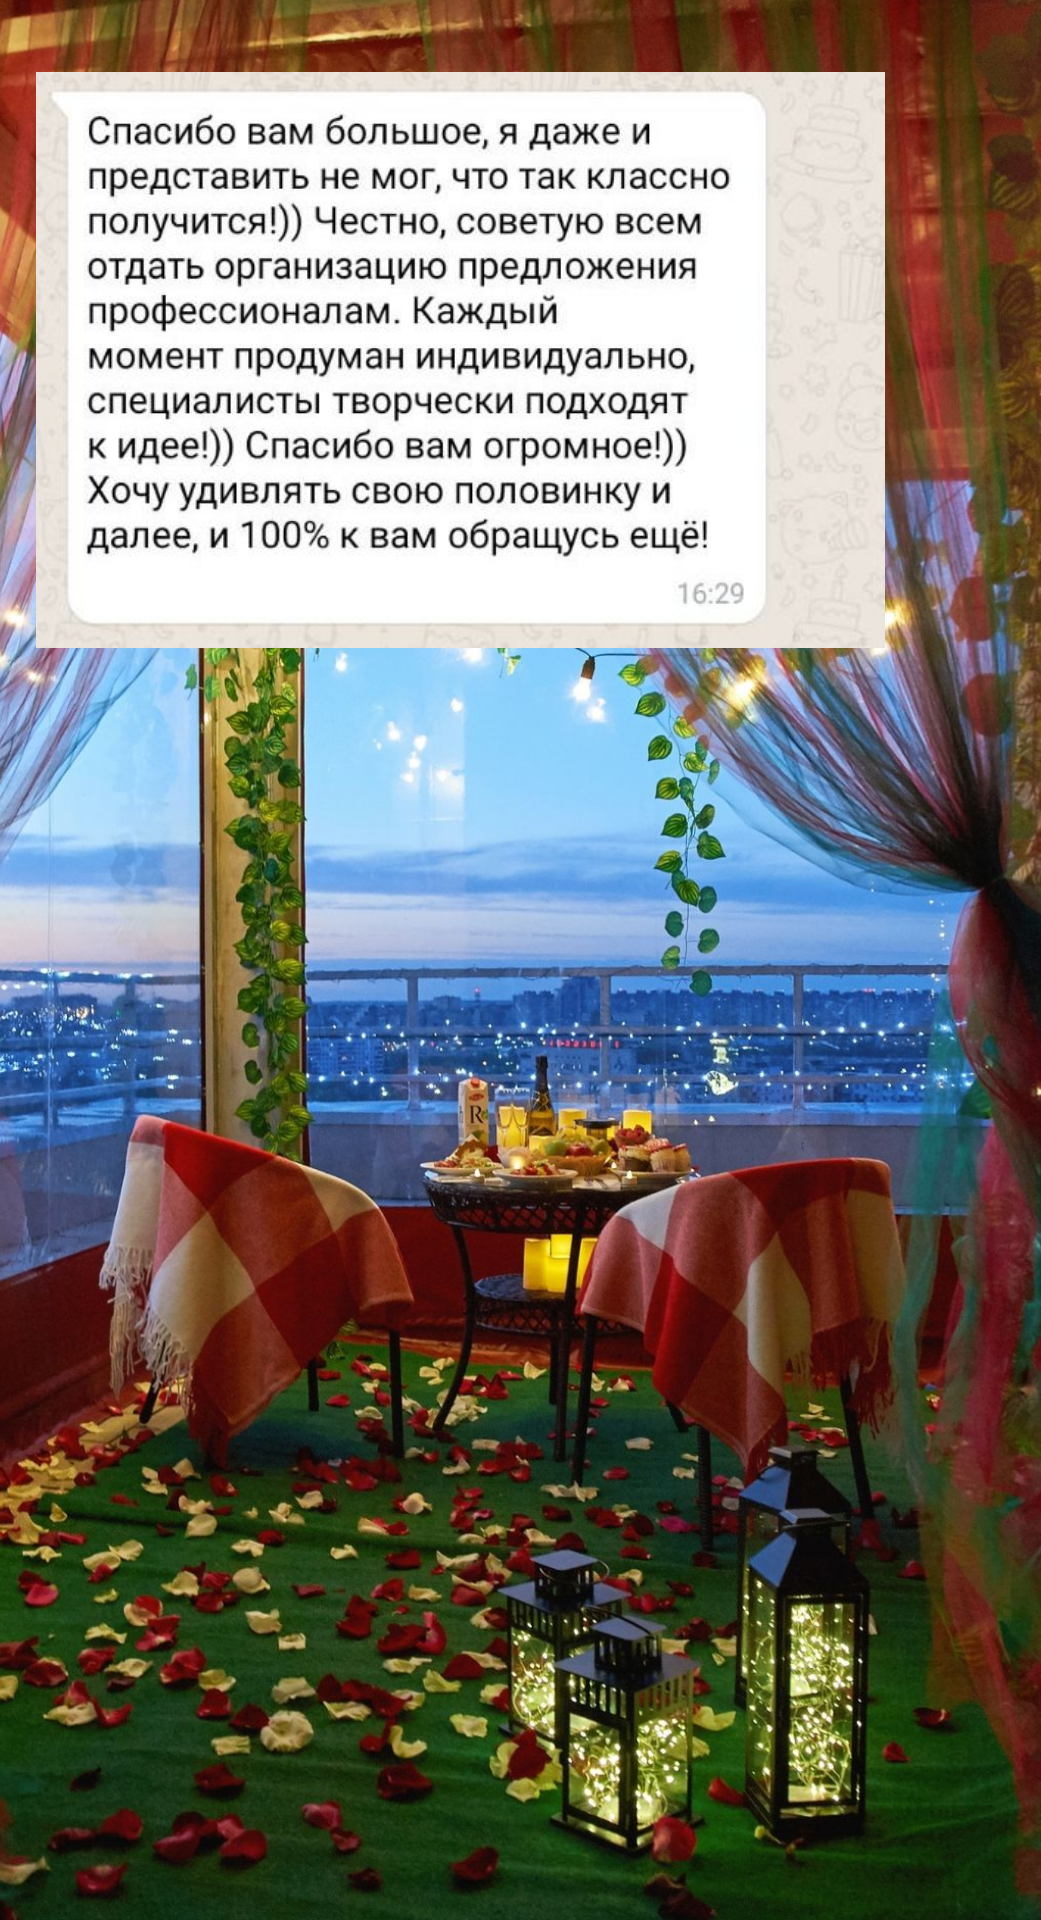 Организация предложения руки и сердца в Иркутске
от компании Pandaevent